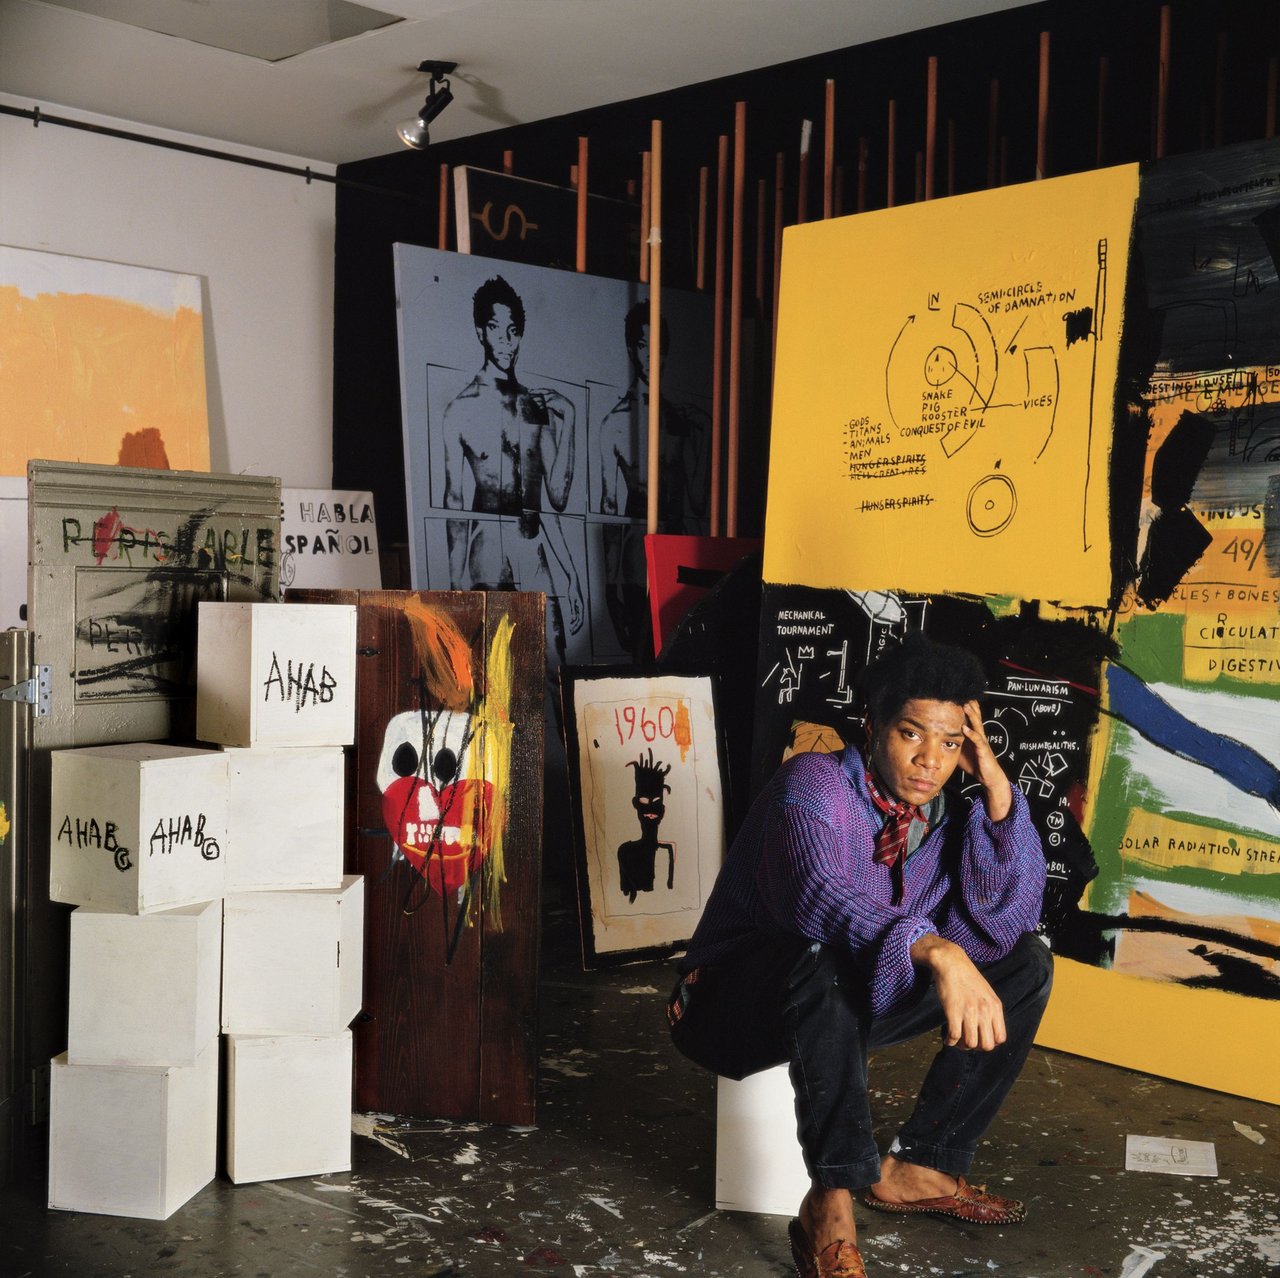 12 days until #Basquiat.  #art #streetart #graffiti #creativeart #modernart #jeanmichelbasquiat #music https://t.co/yXLPW8hiV3